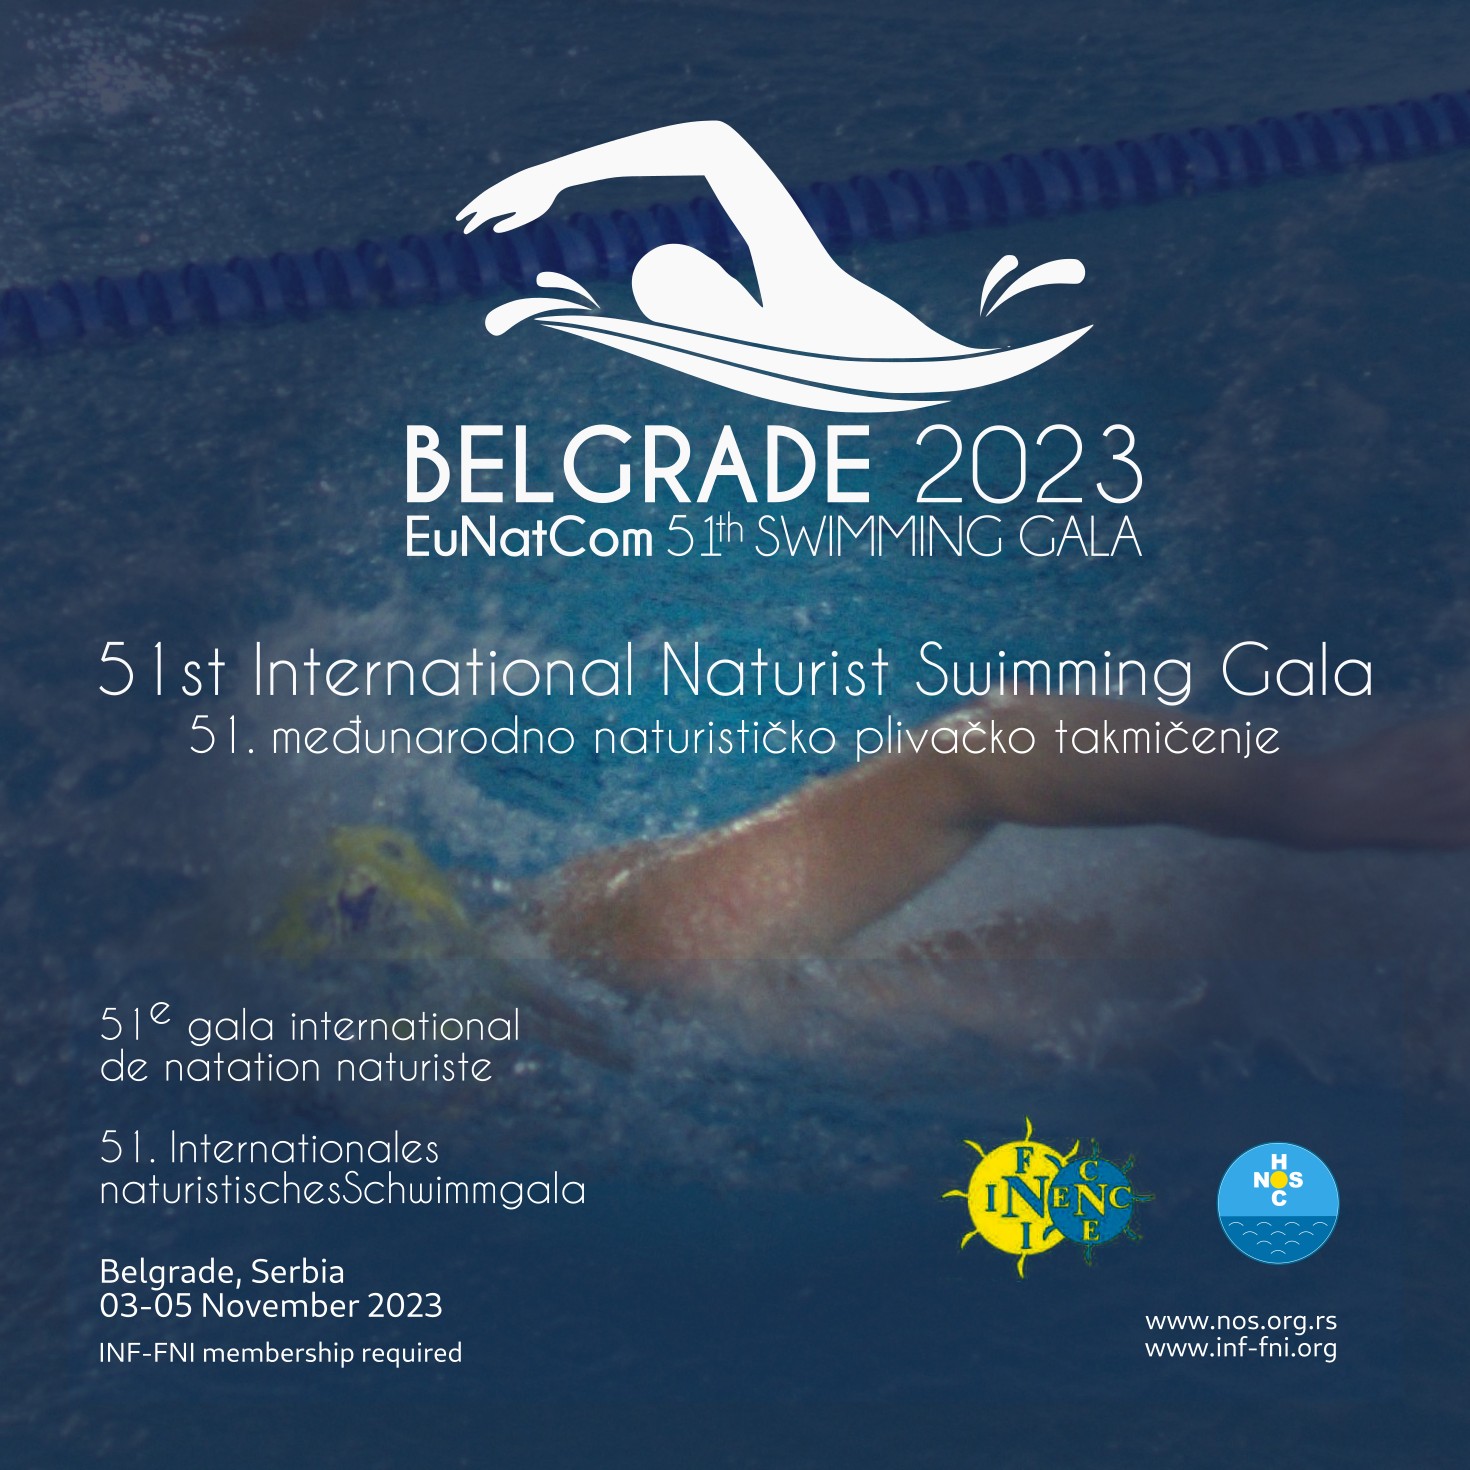 Beograd je po drugi put domaćin međunarodnog naturističkog plivačkog takmičenja Swimming Gala 2023